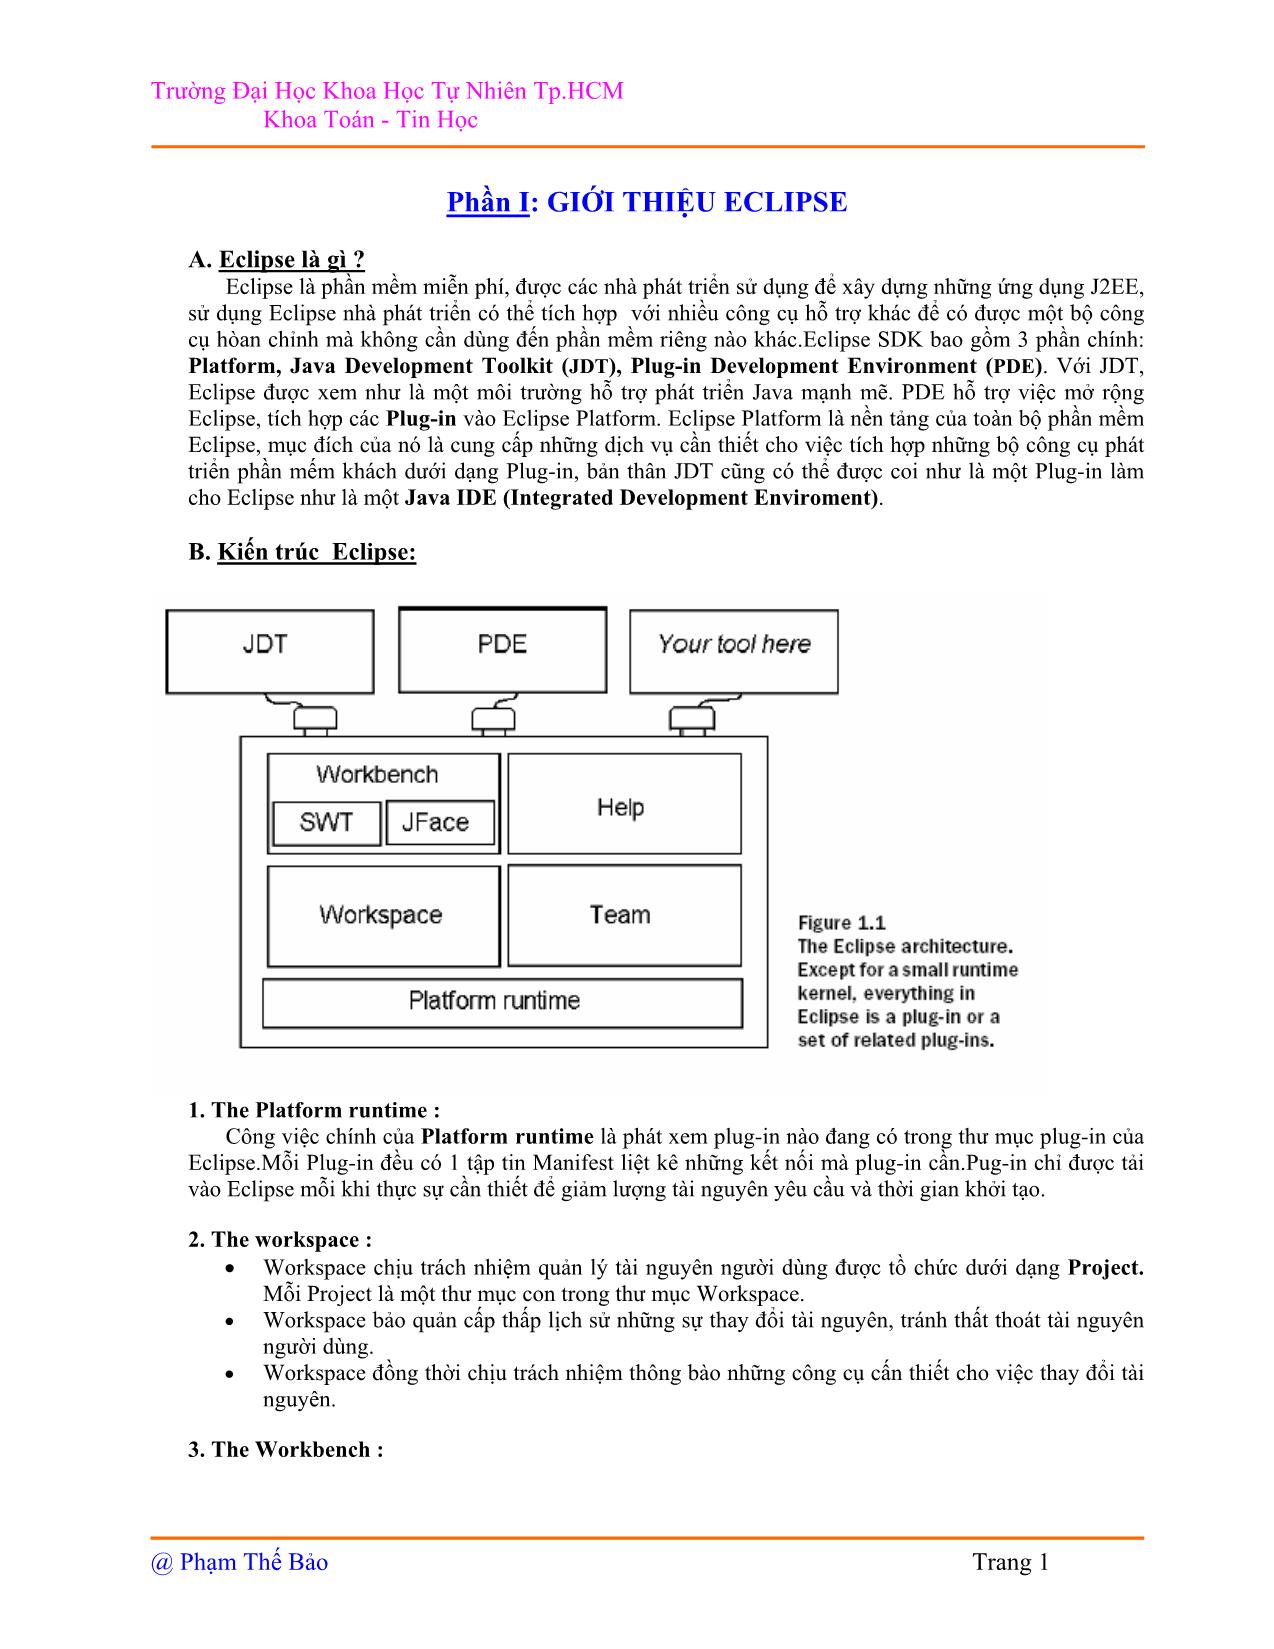 Java IDE trang 1